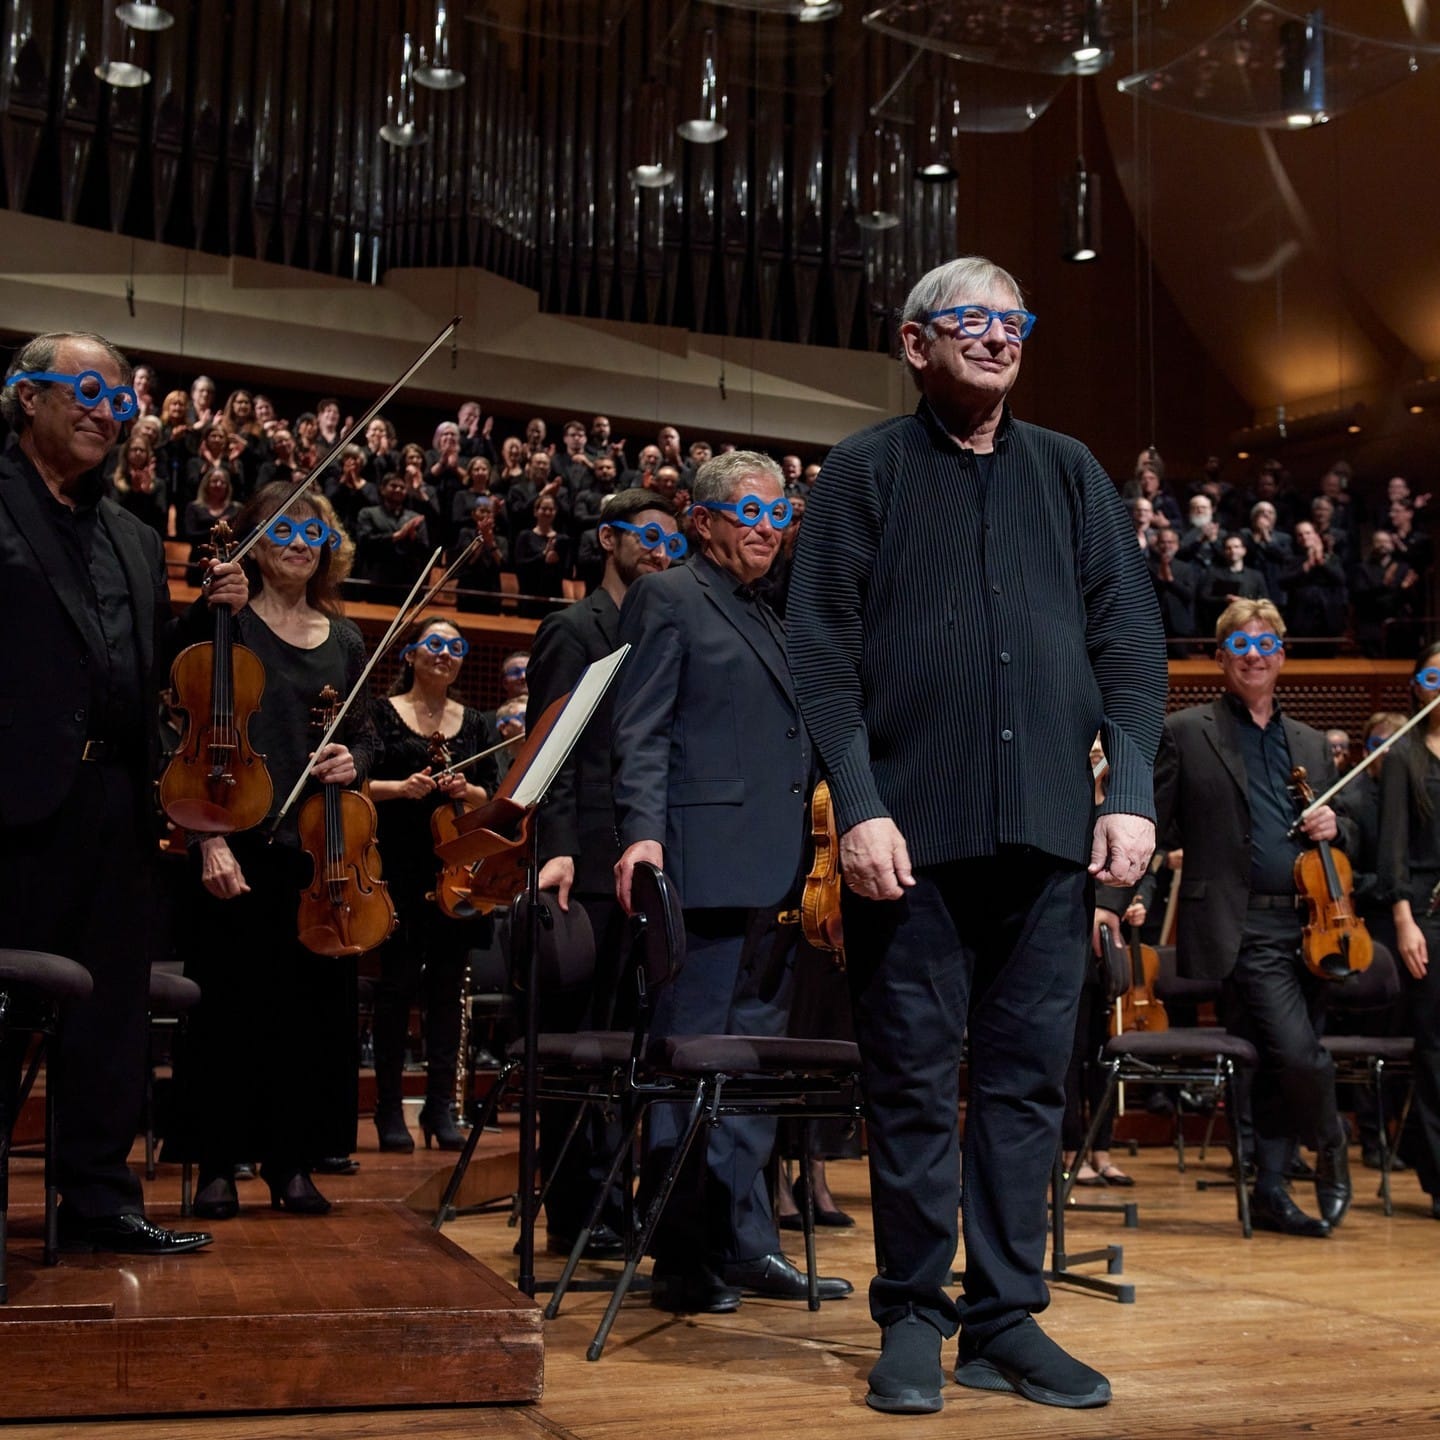 The orchestra wore blue glasses - Slippedisc